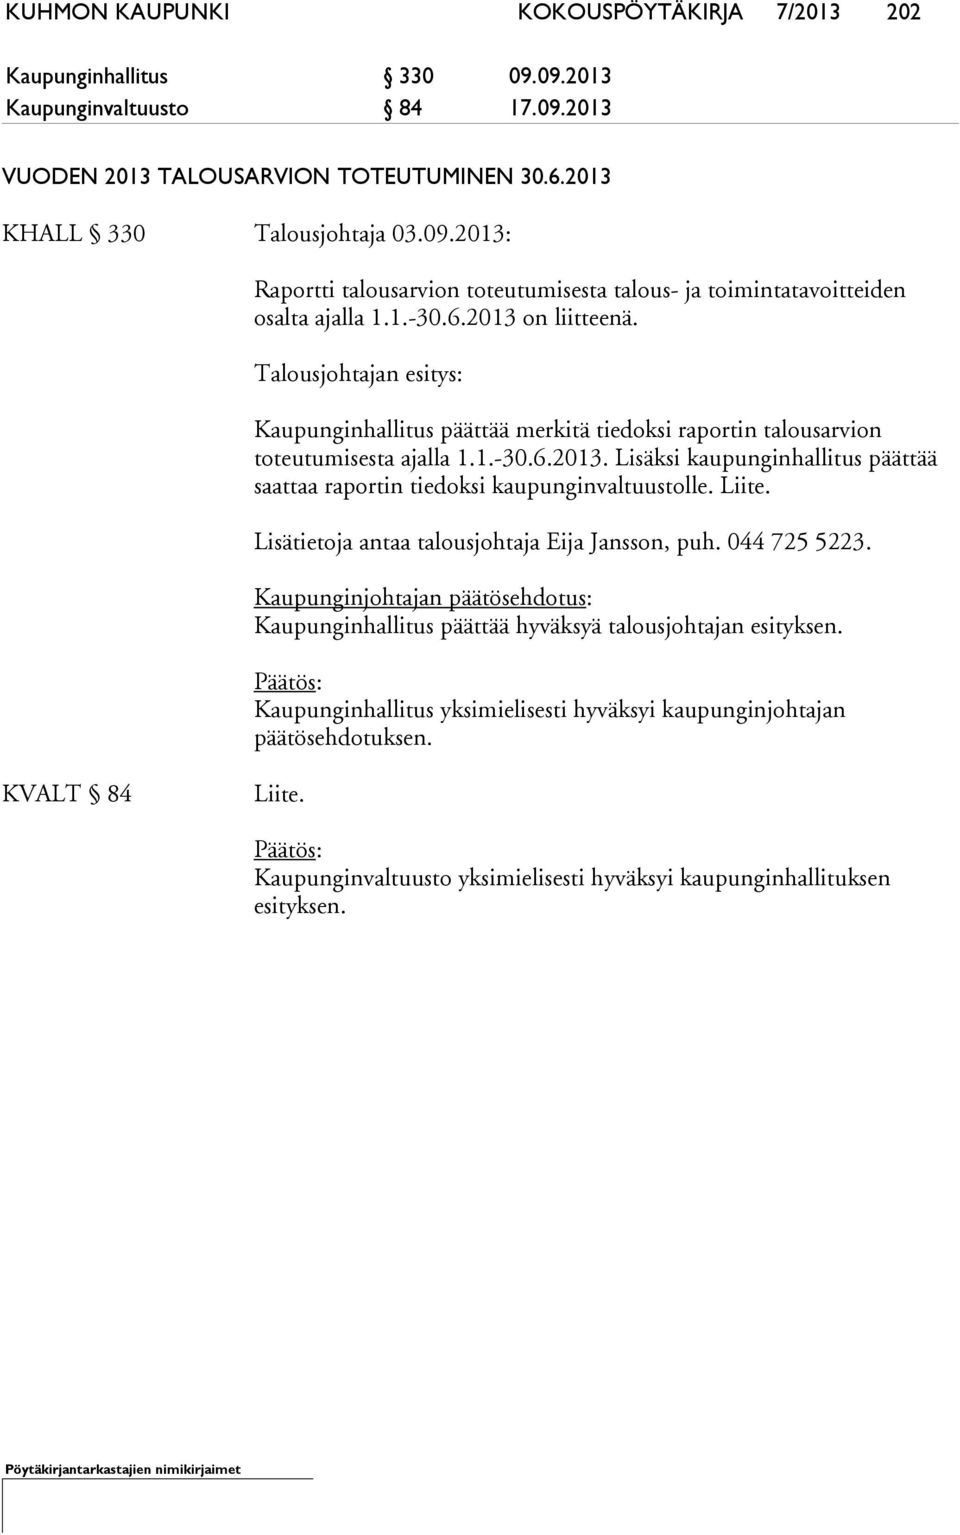 Liite. Lisätietoja antaa talousjohtaja Eija Jansson, puh. 044 725 5223. Kaupunginjohtajan päätösehdotus: Kaupunginhallitus päättää hyväksyä talousjohtajan esityksen.